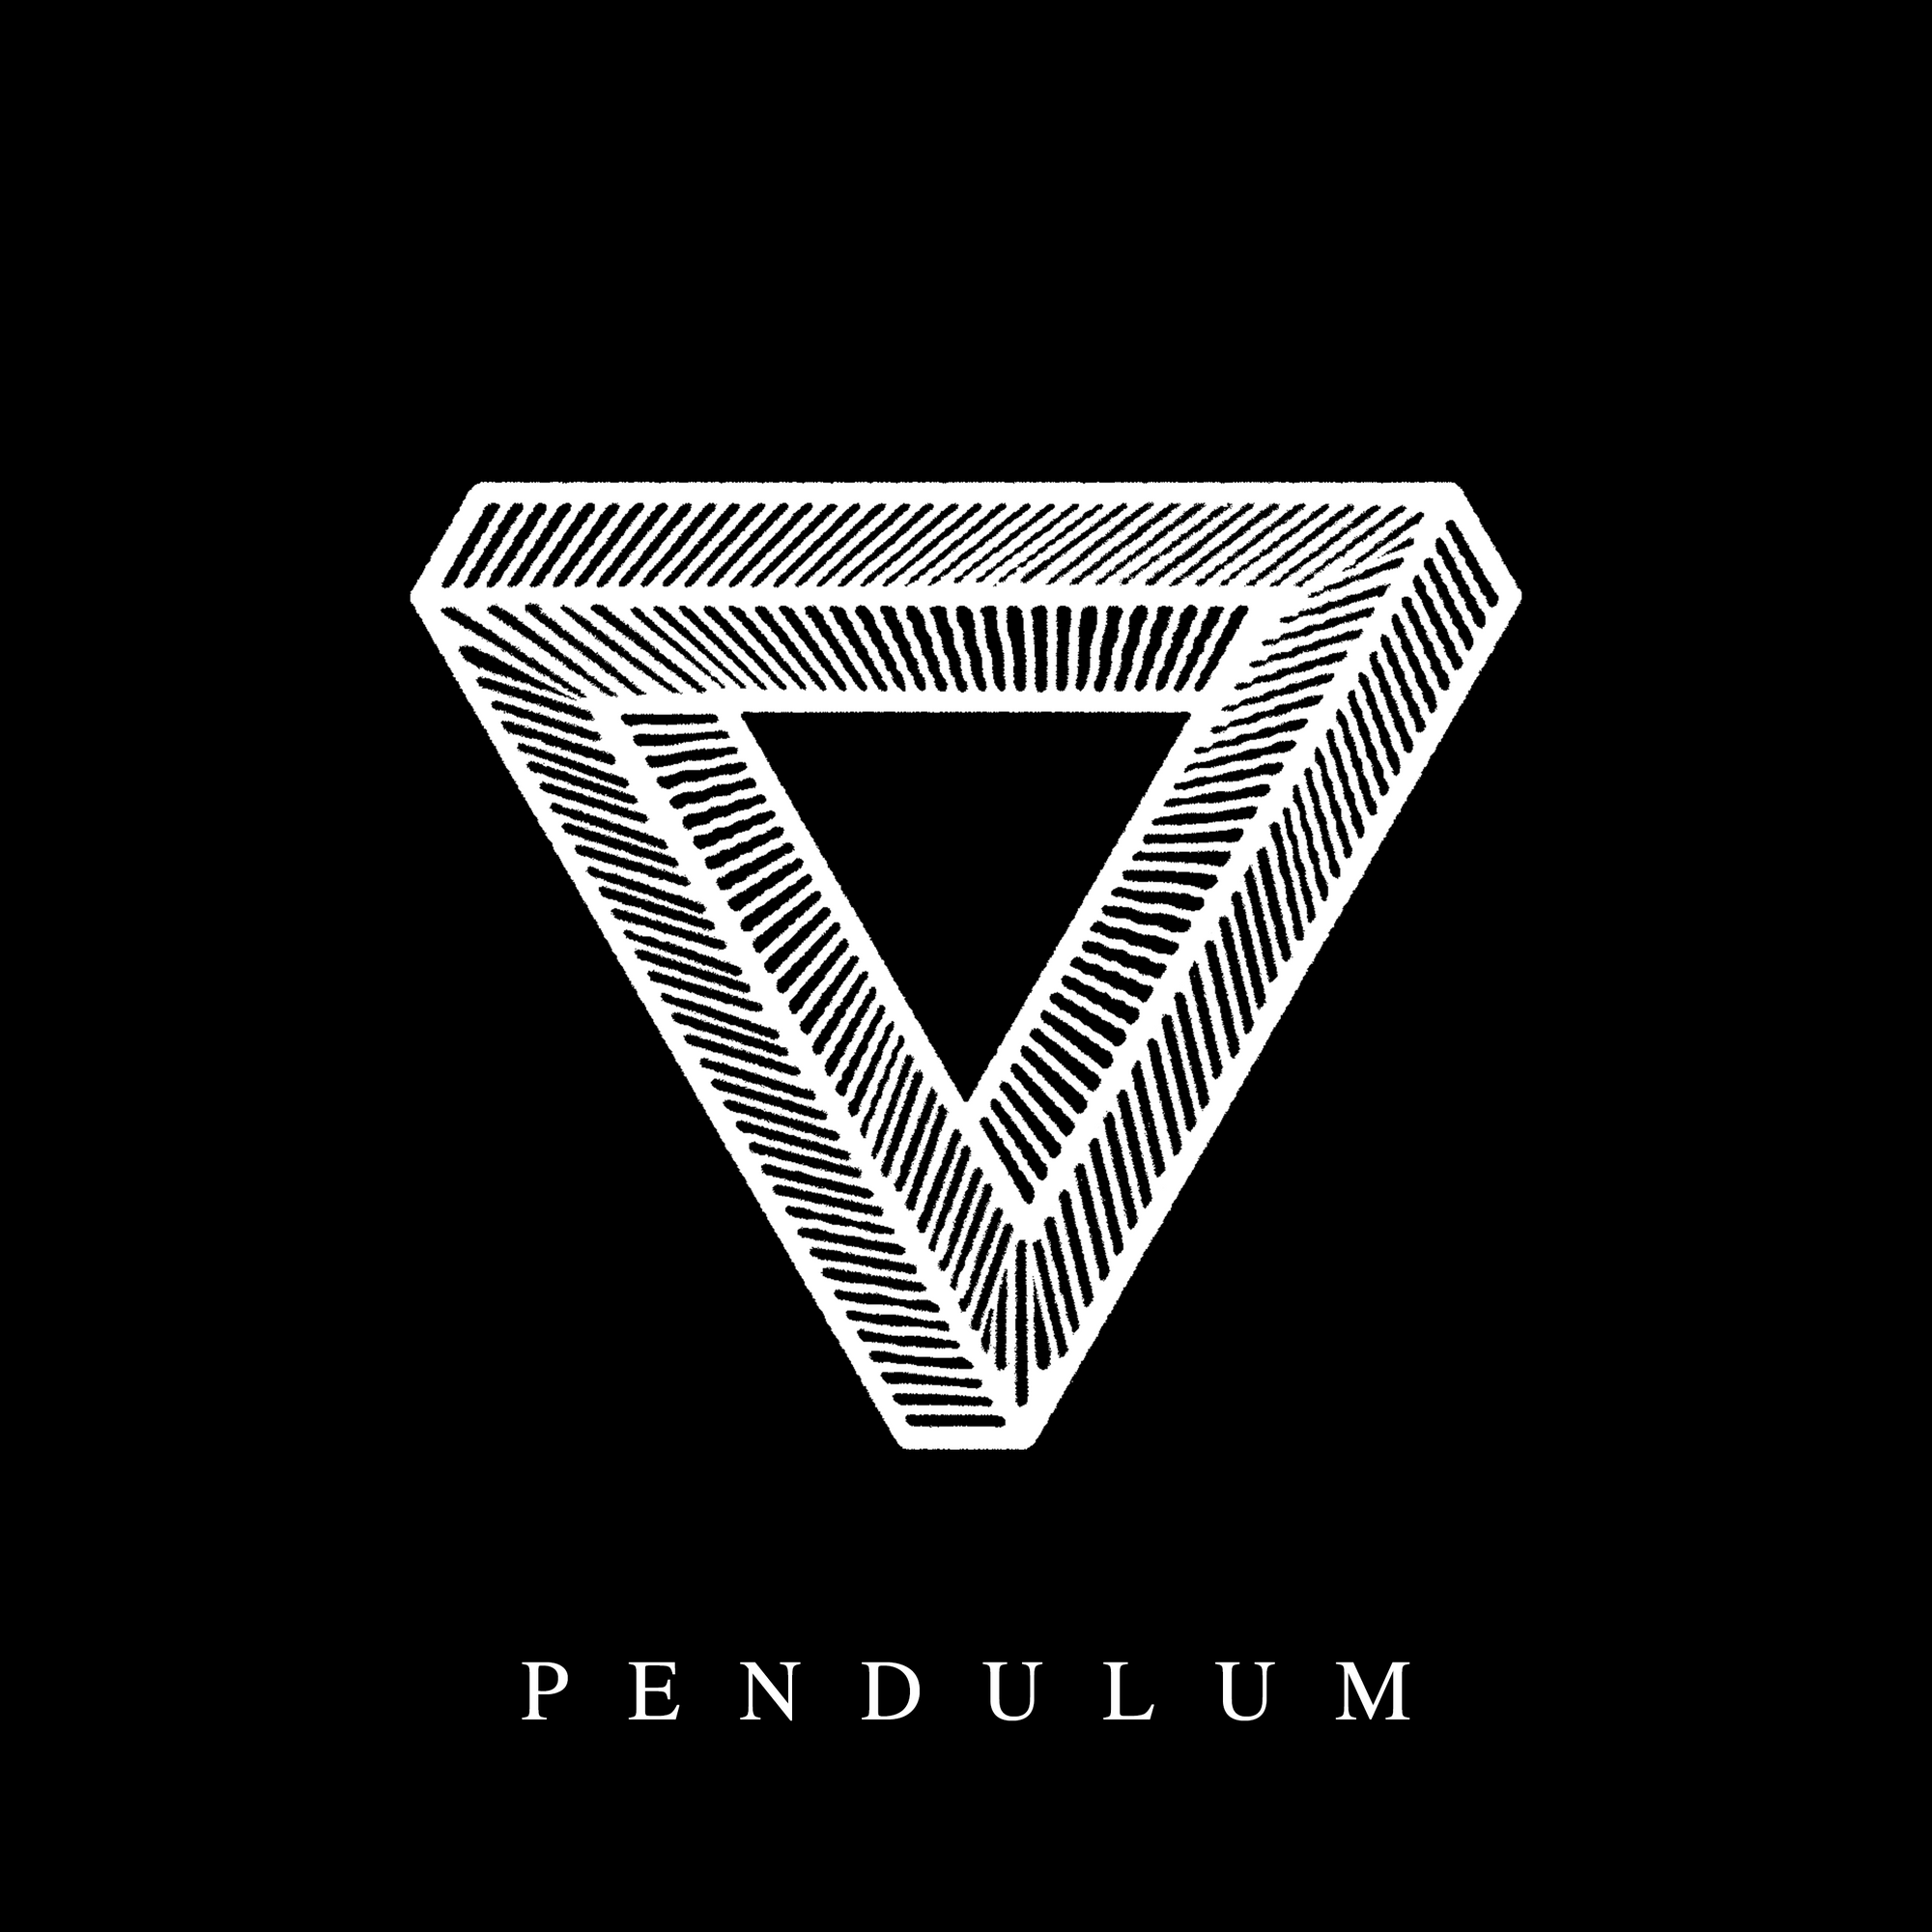 TWIN TRIBES "Pendulum" LP